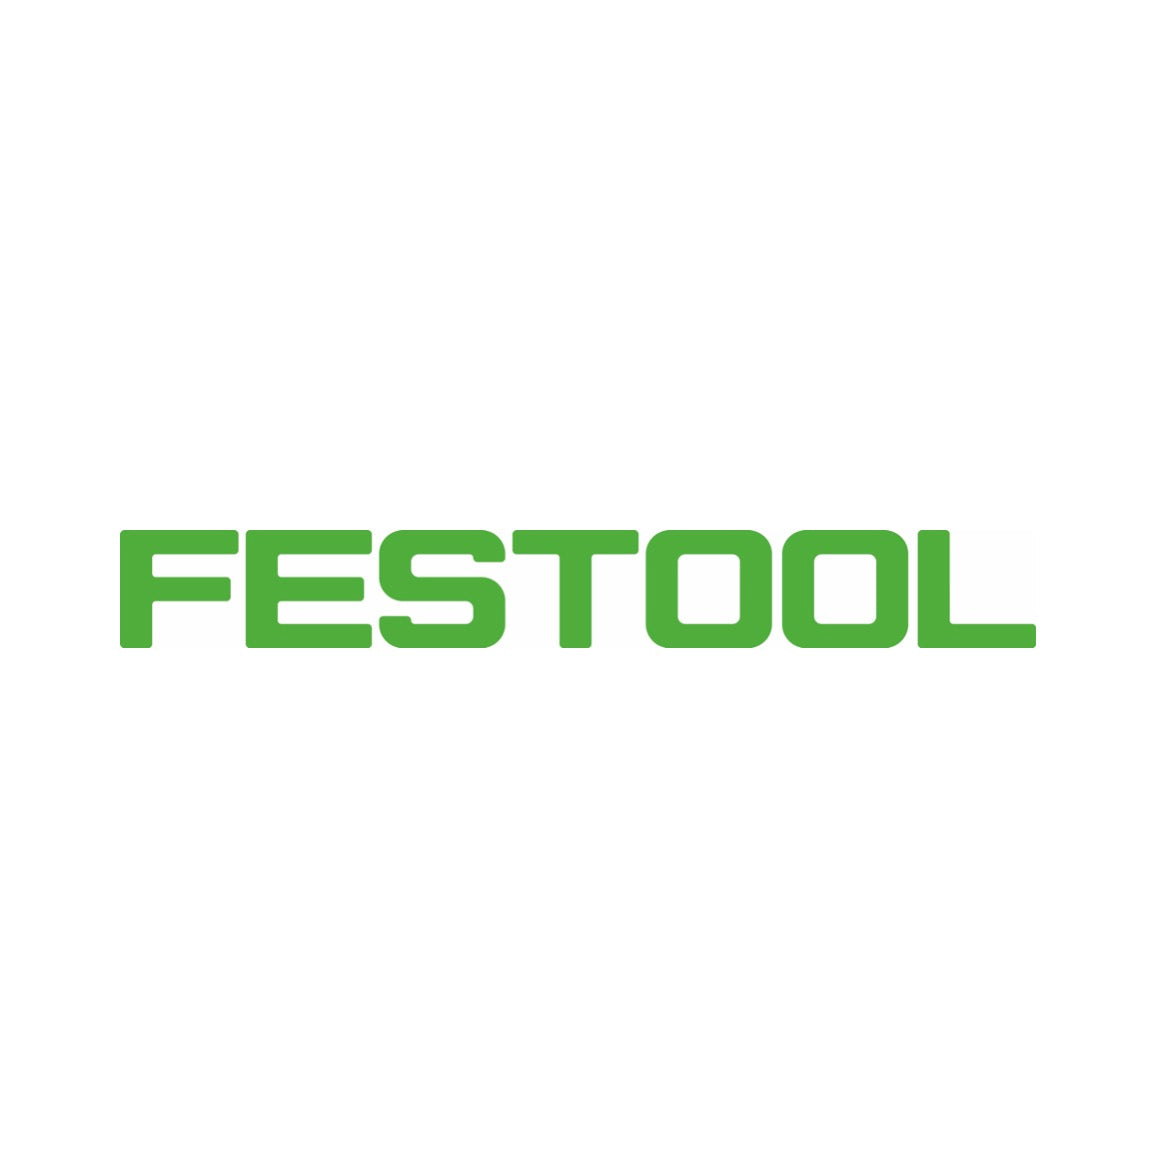 Festool ENS-CT 36 AC/5 Entsorgungssack 5 Stück für Absaugmobile CT 36 mit Autoclean ( 496215 )